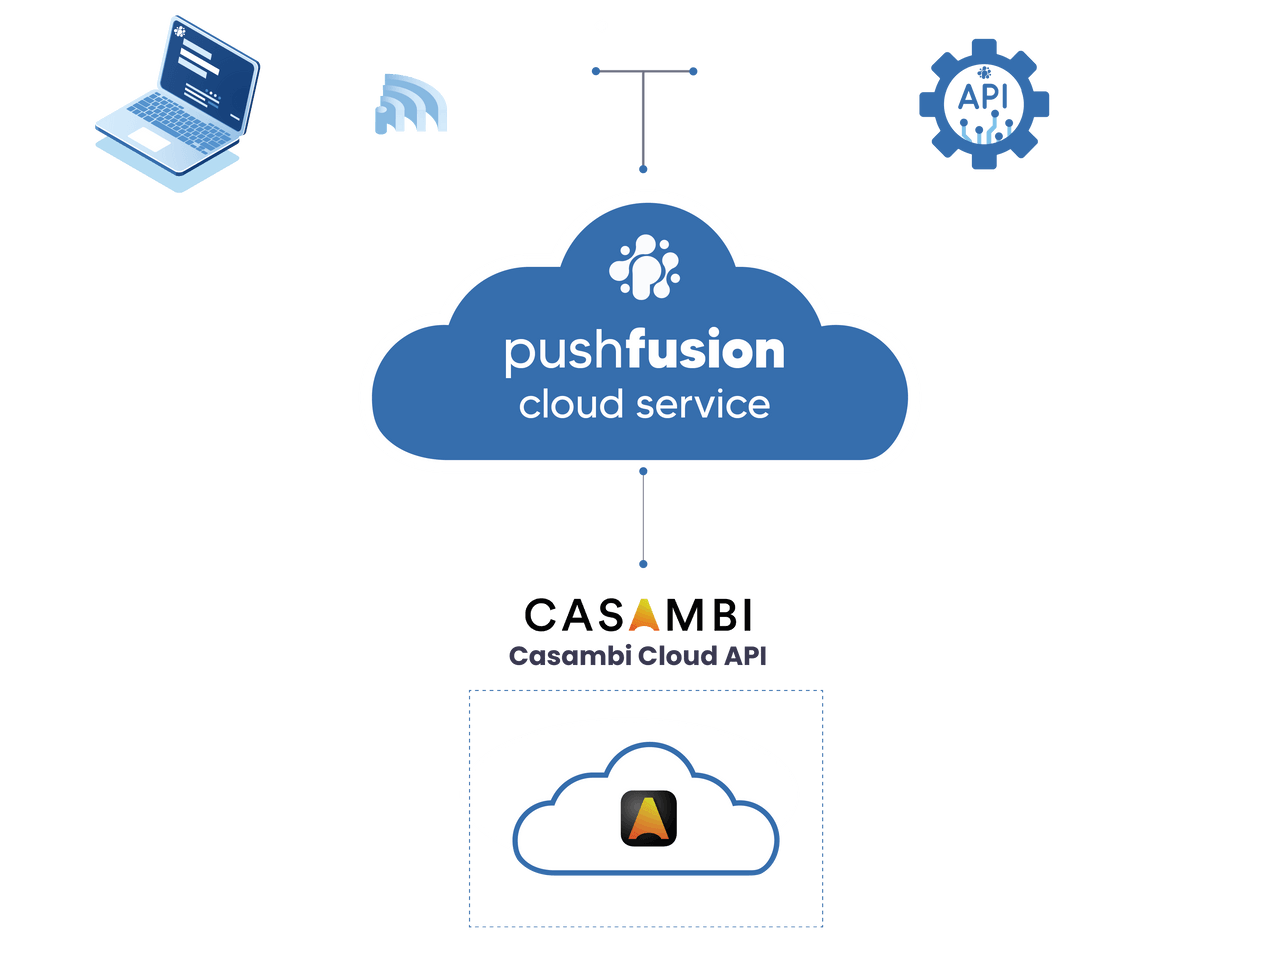 pushfusion Casambi cloud integration diagram